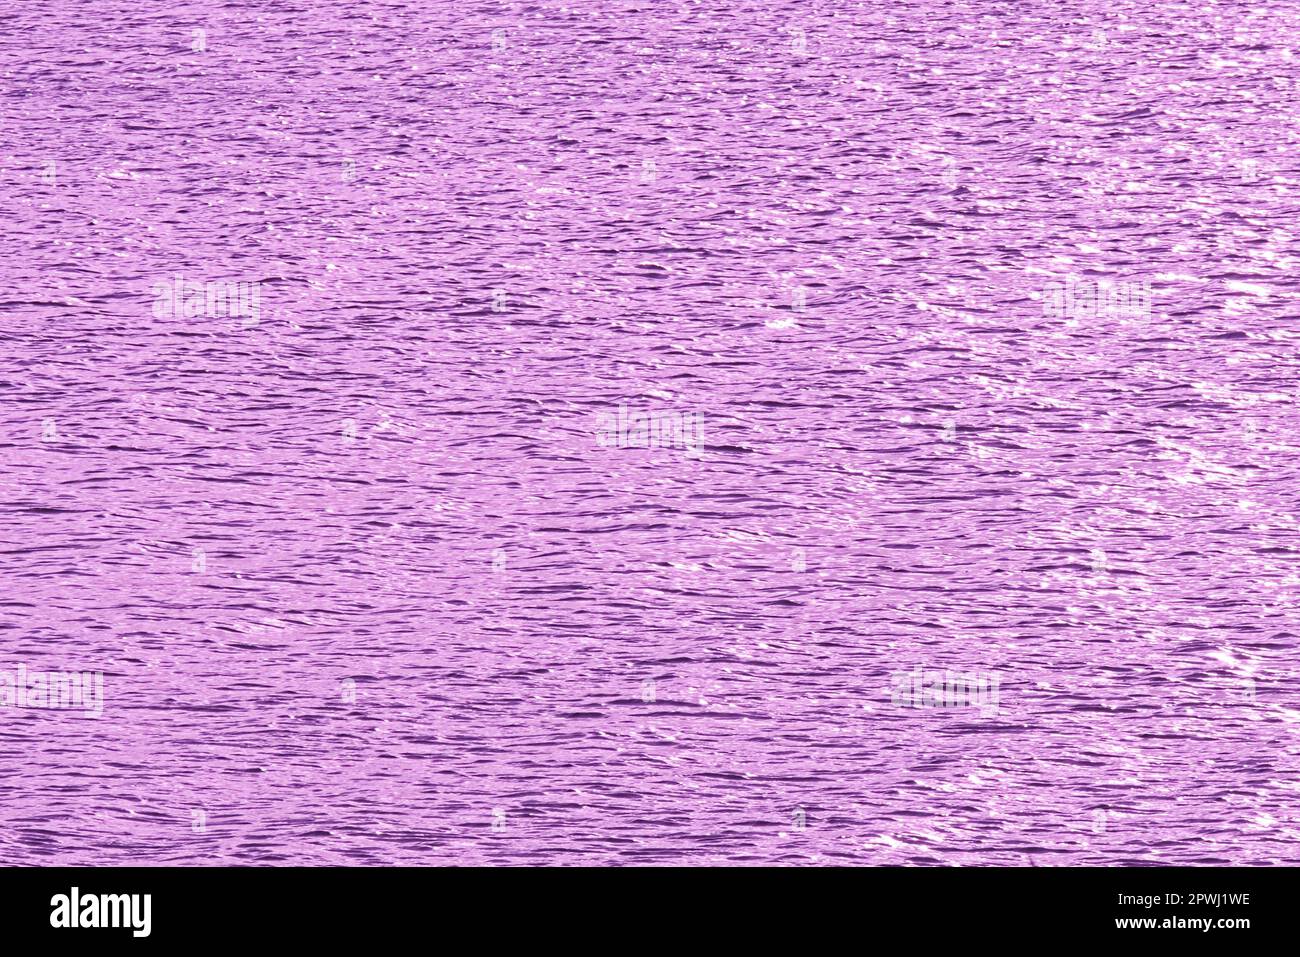 Hintergrund Wasserspiegel Nahe Zeewolde verschiedenfarbige Spiegelung des Veluwemeerarmes Stock Photo